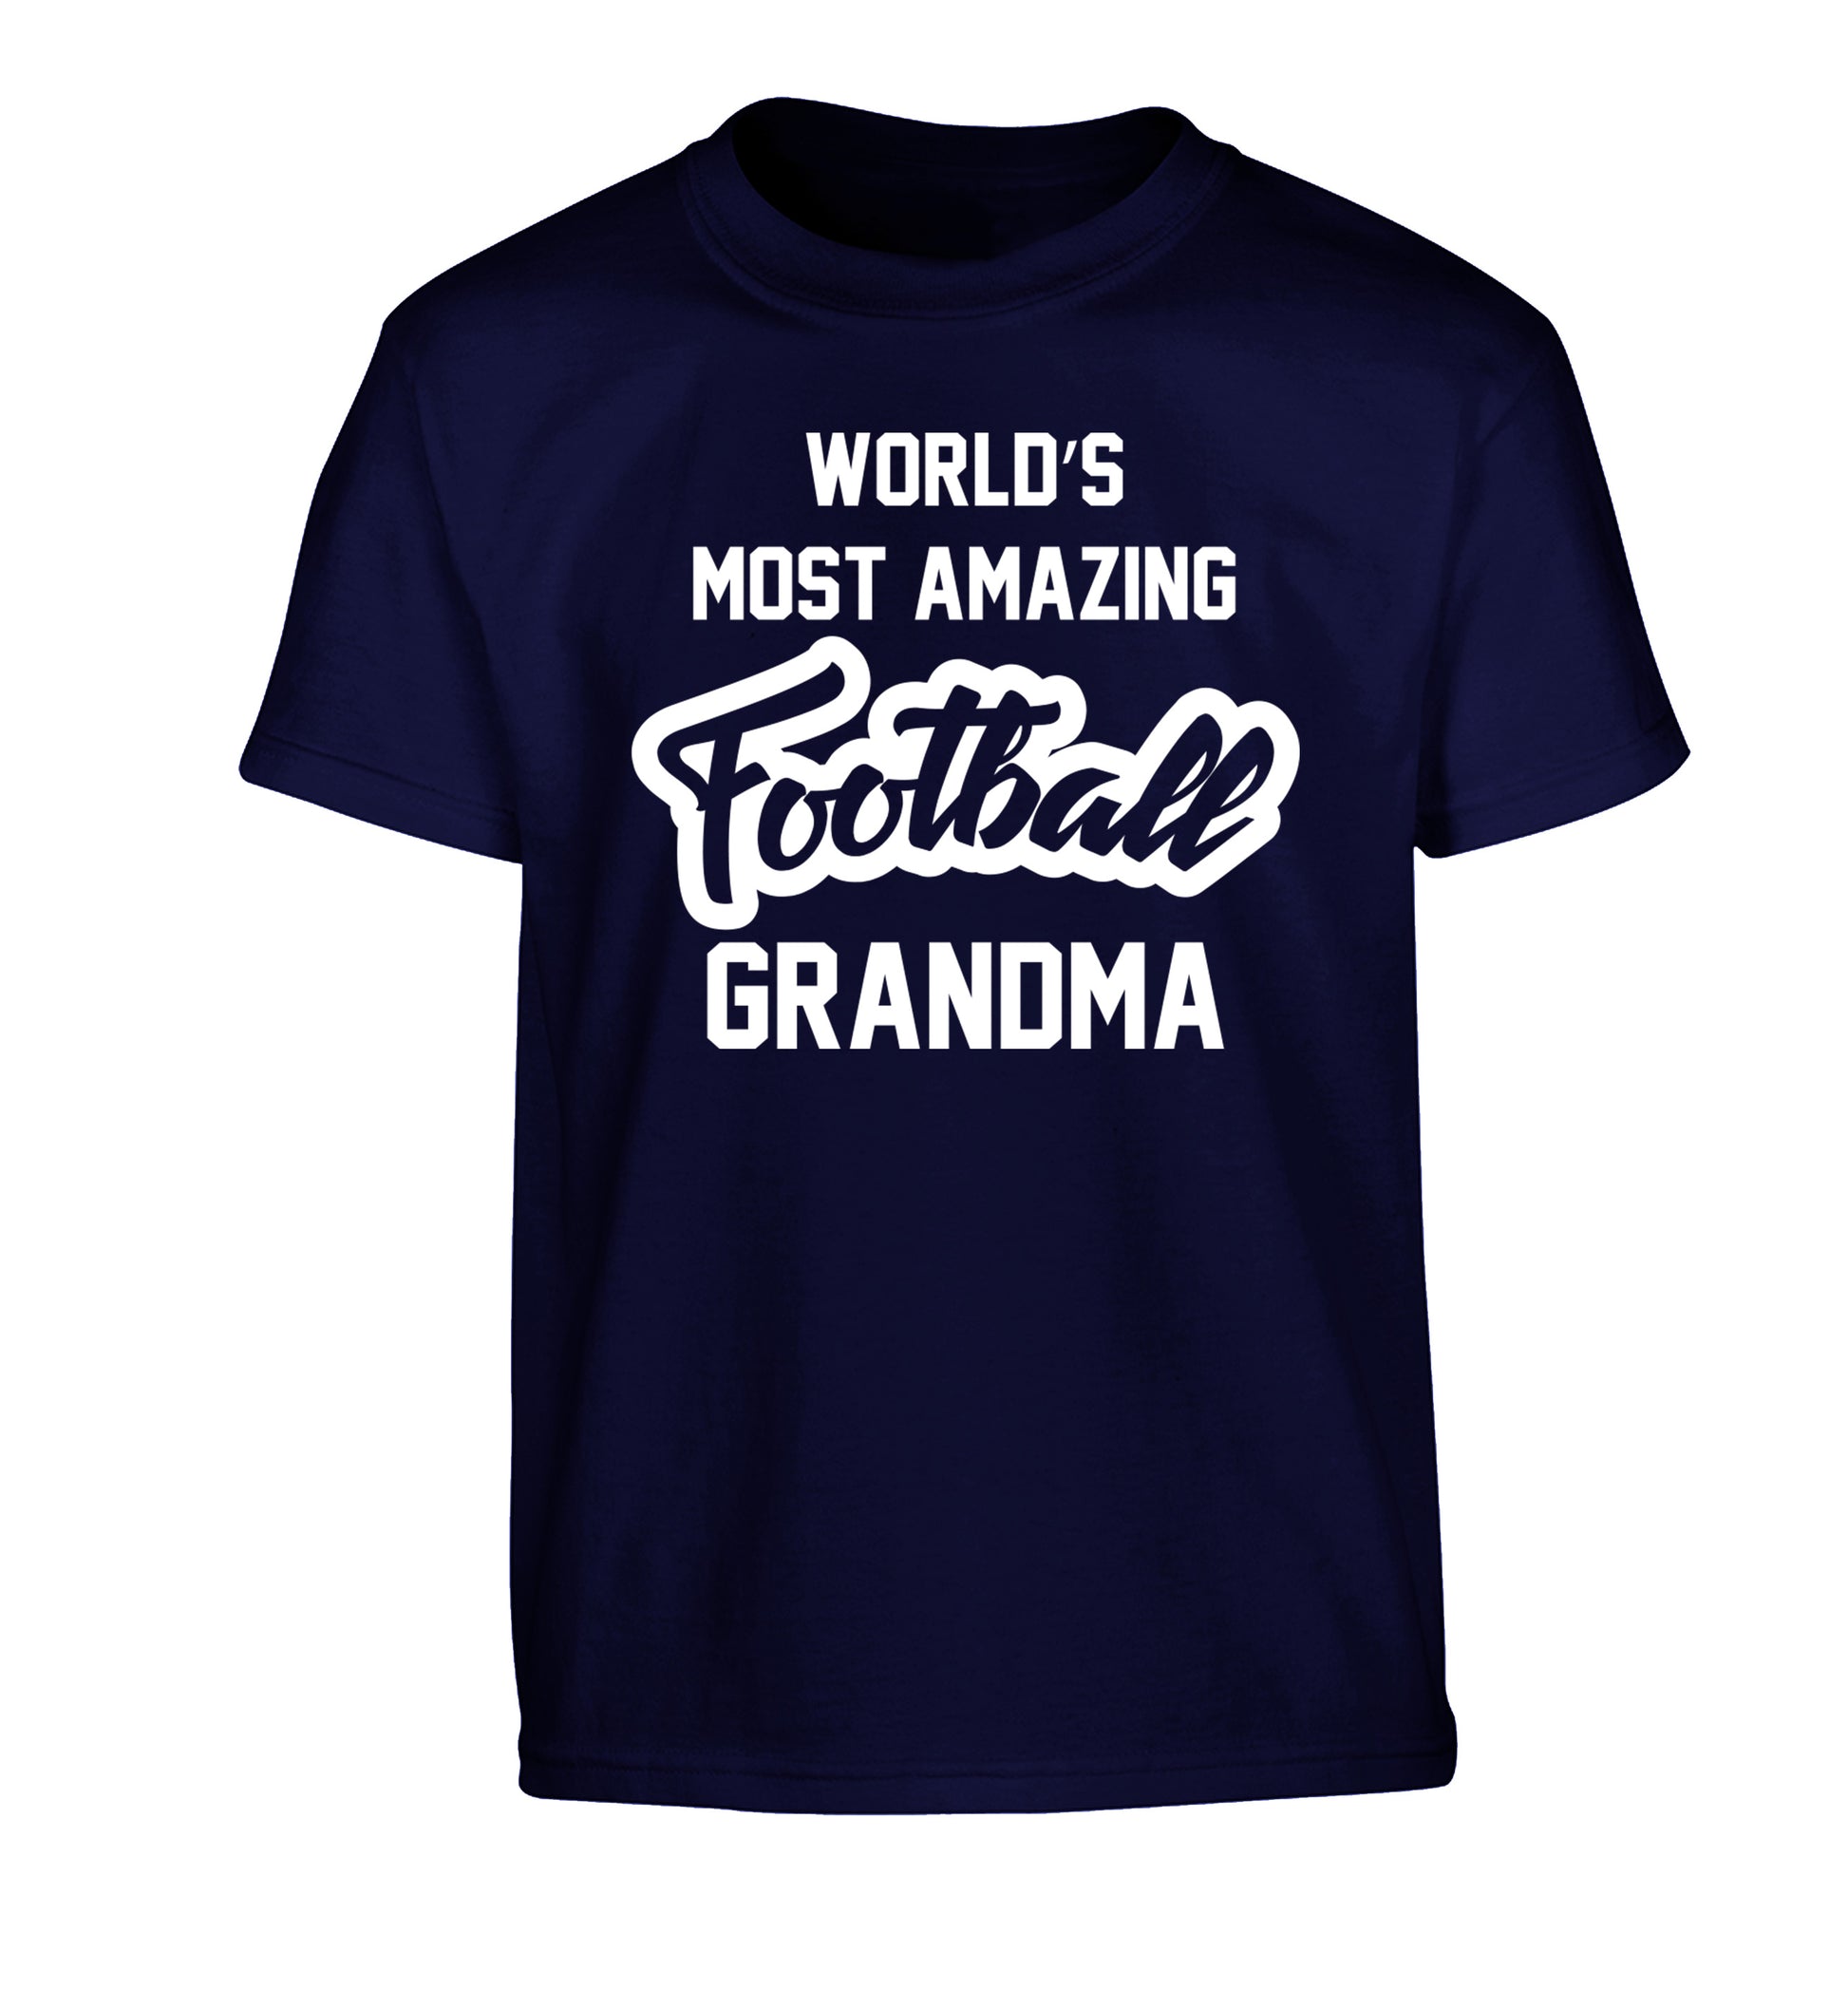 Worlds most amazing football grandma Children's navy Tshirt 12-14 Years